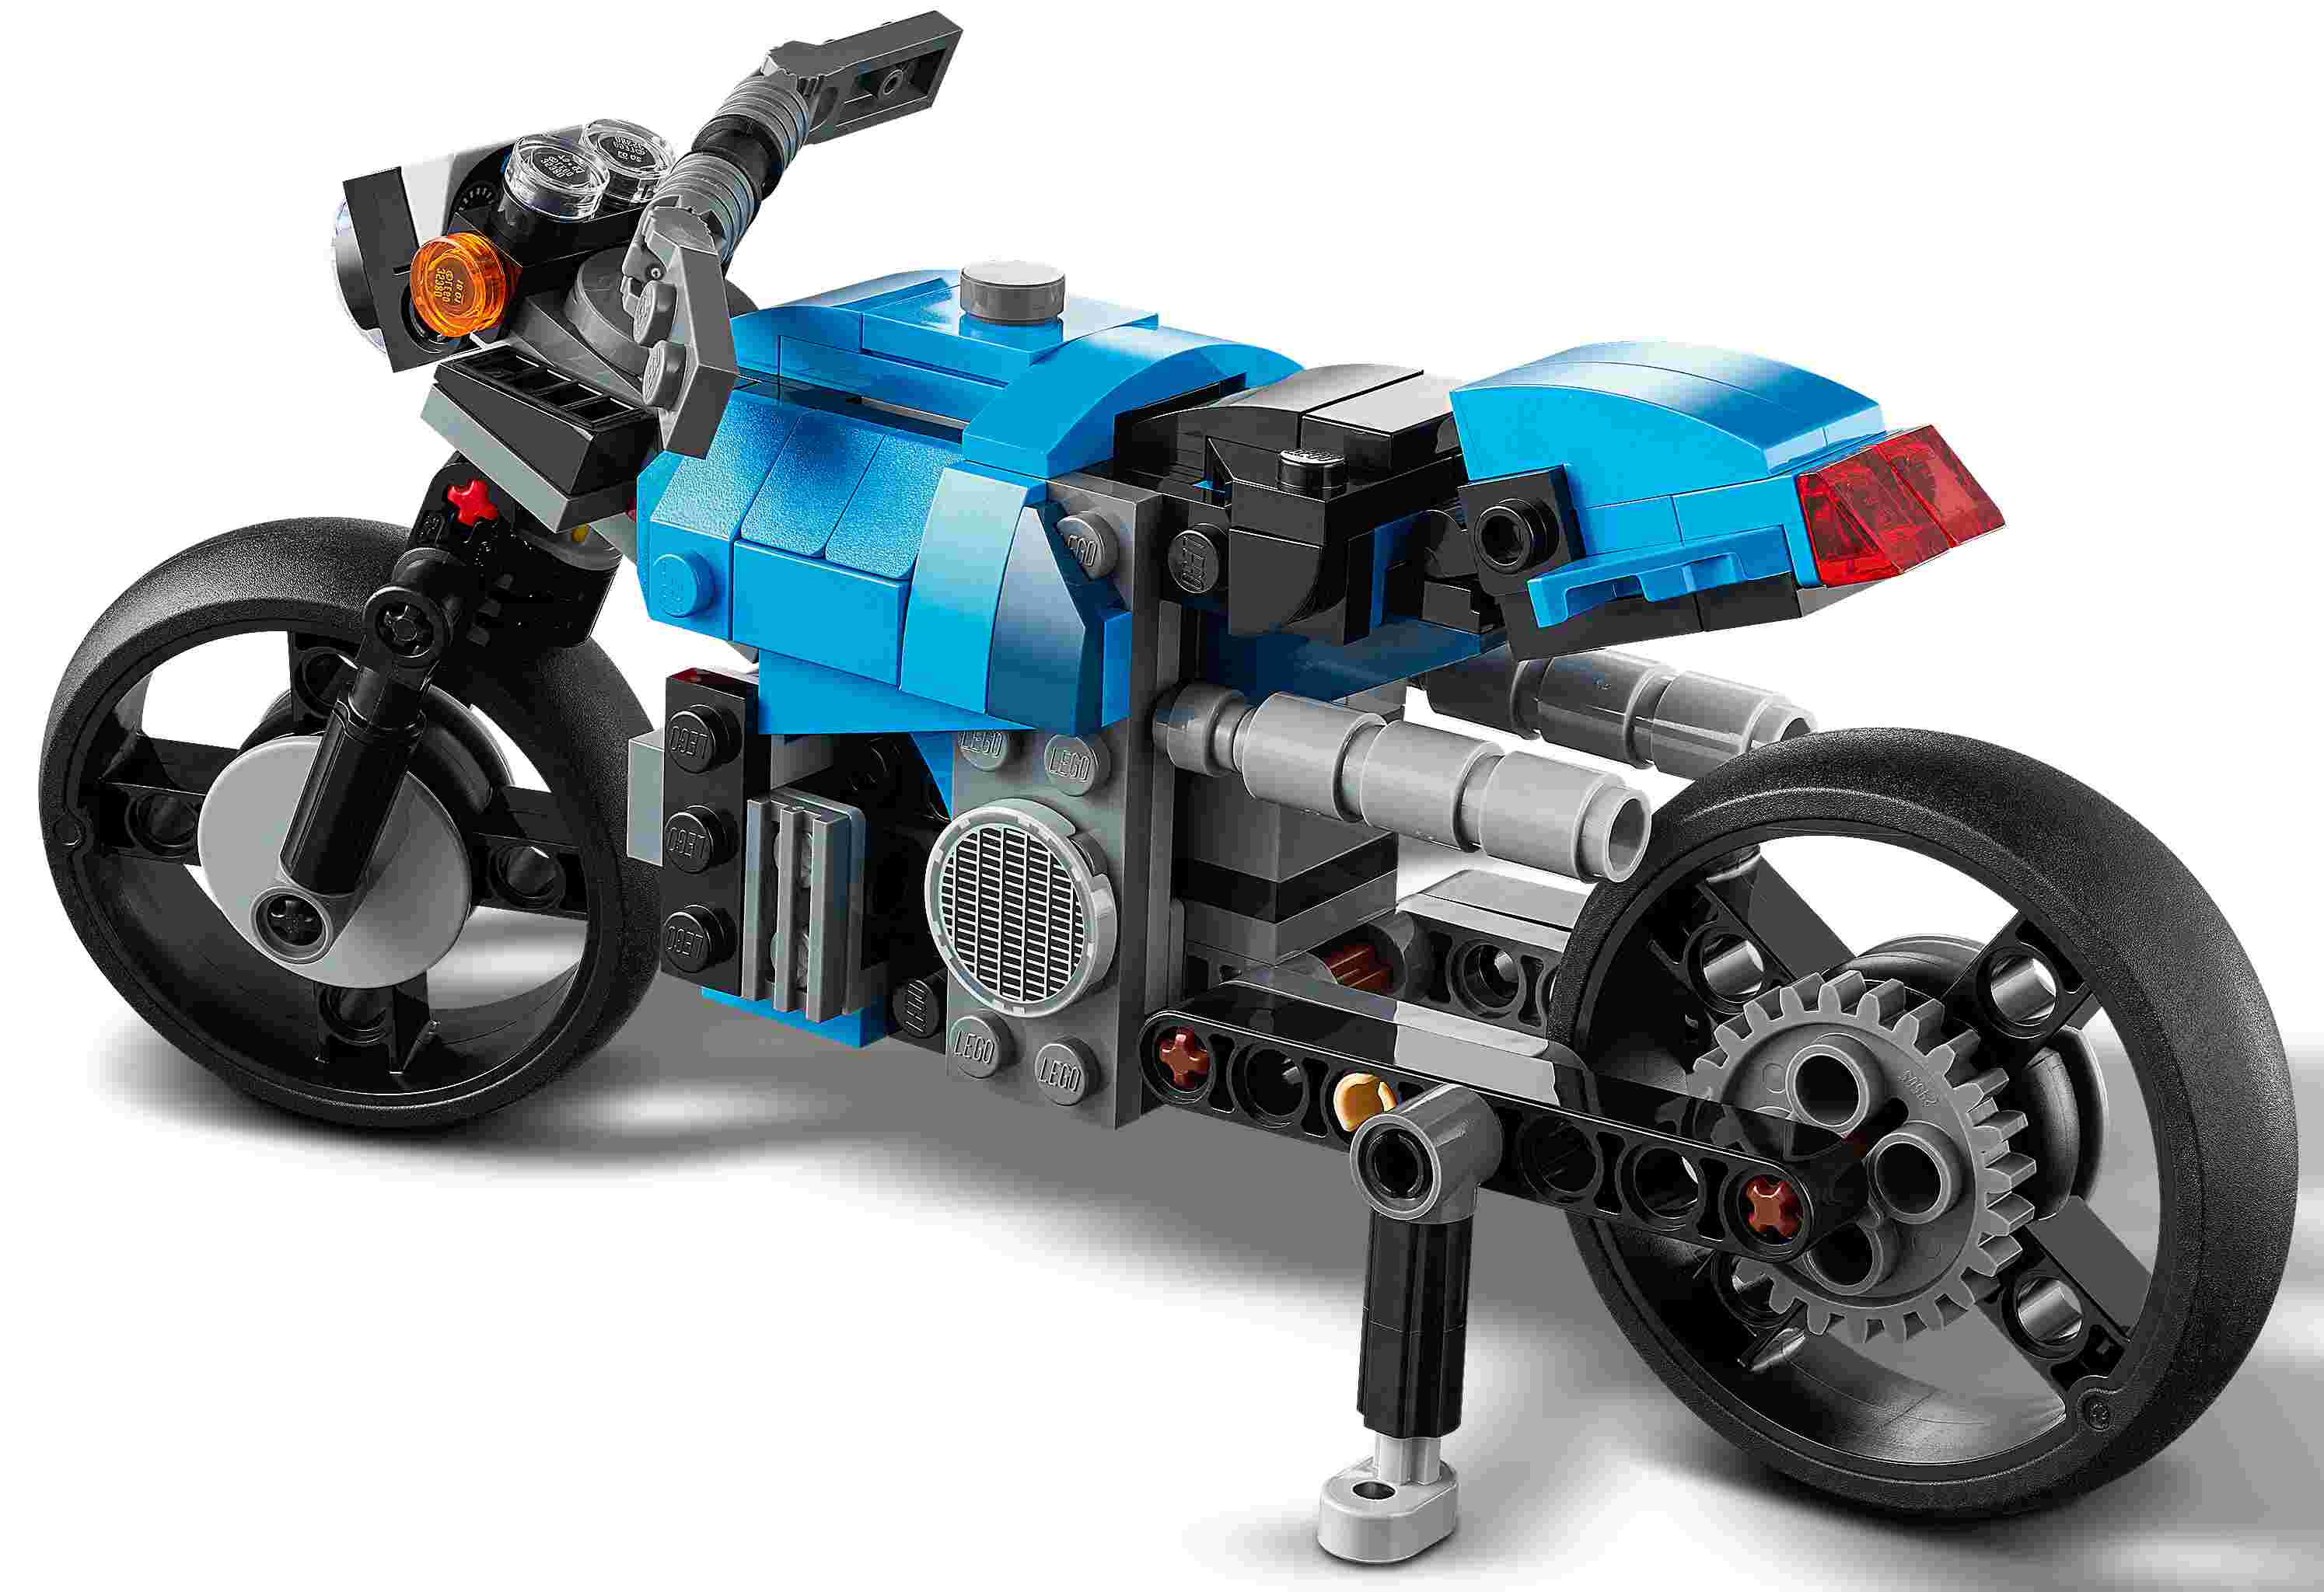 LEGO Oldtimer Motorrad